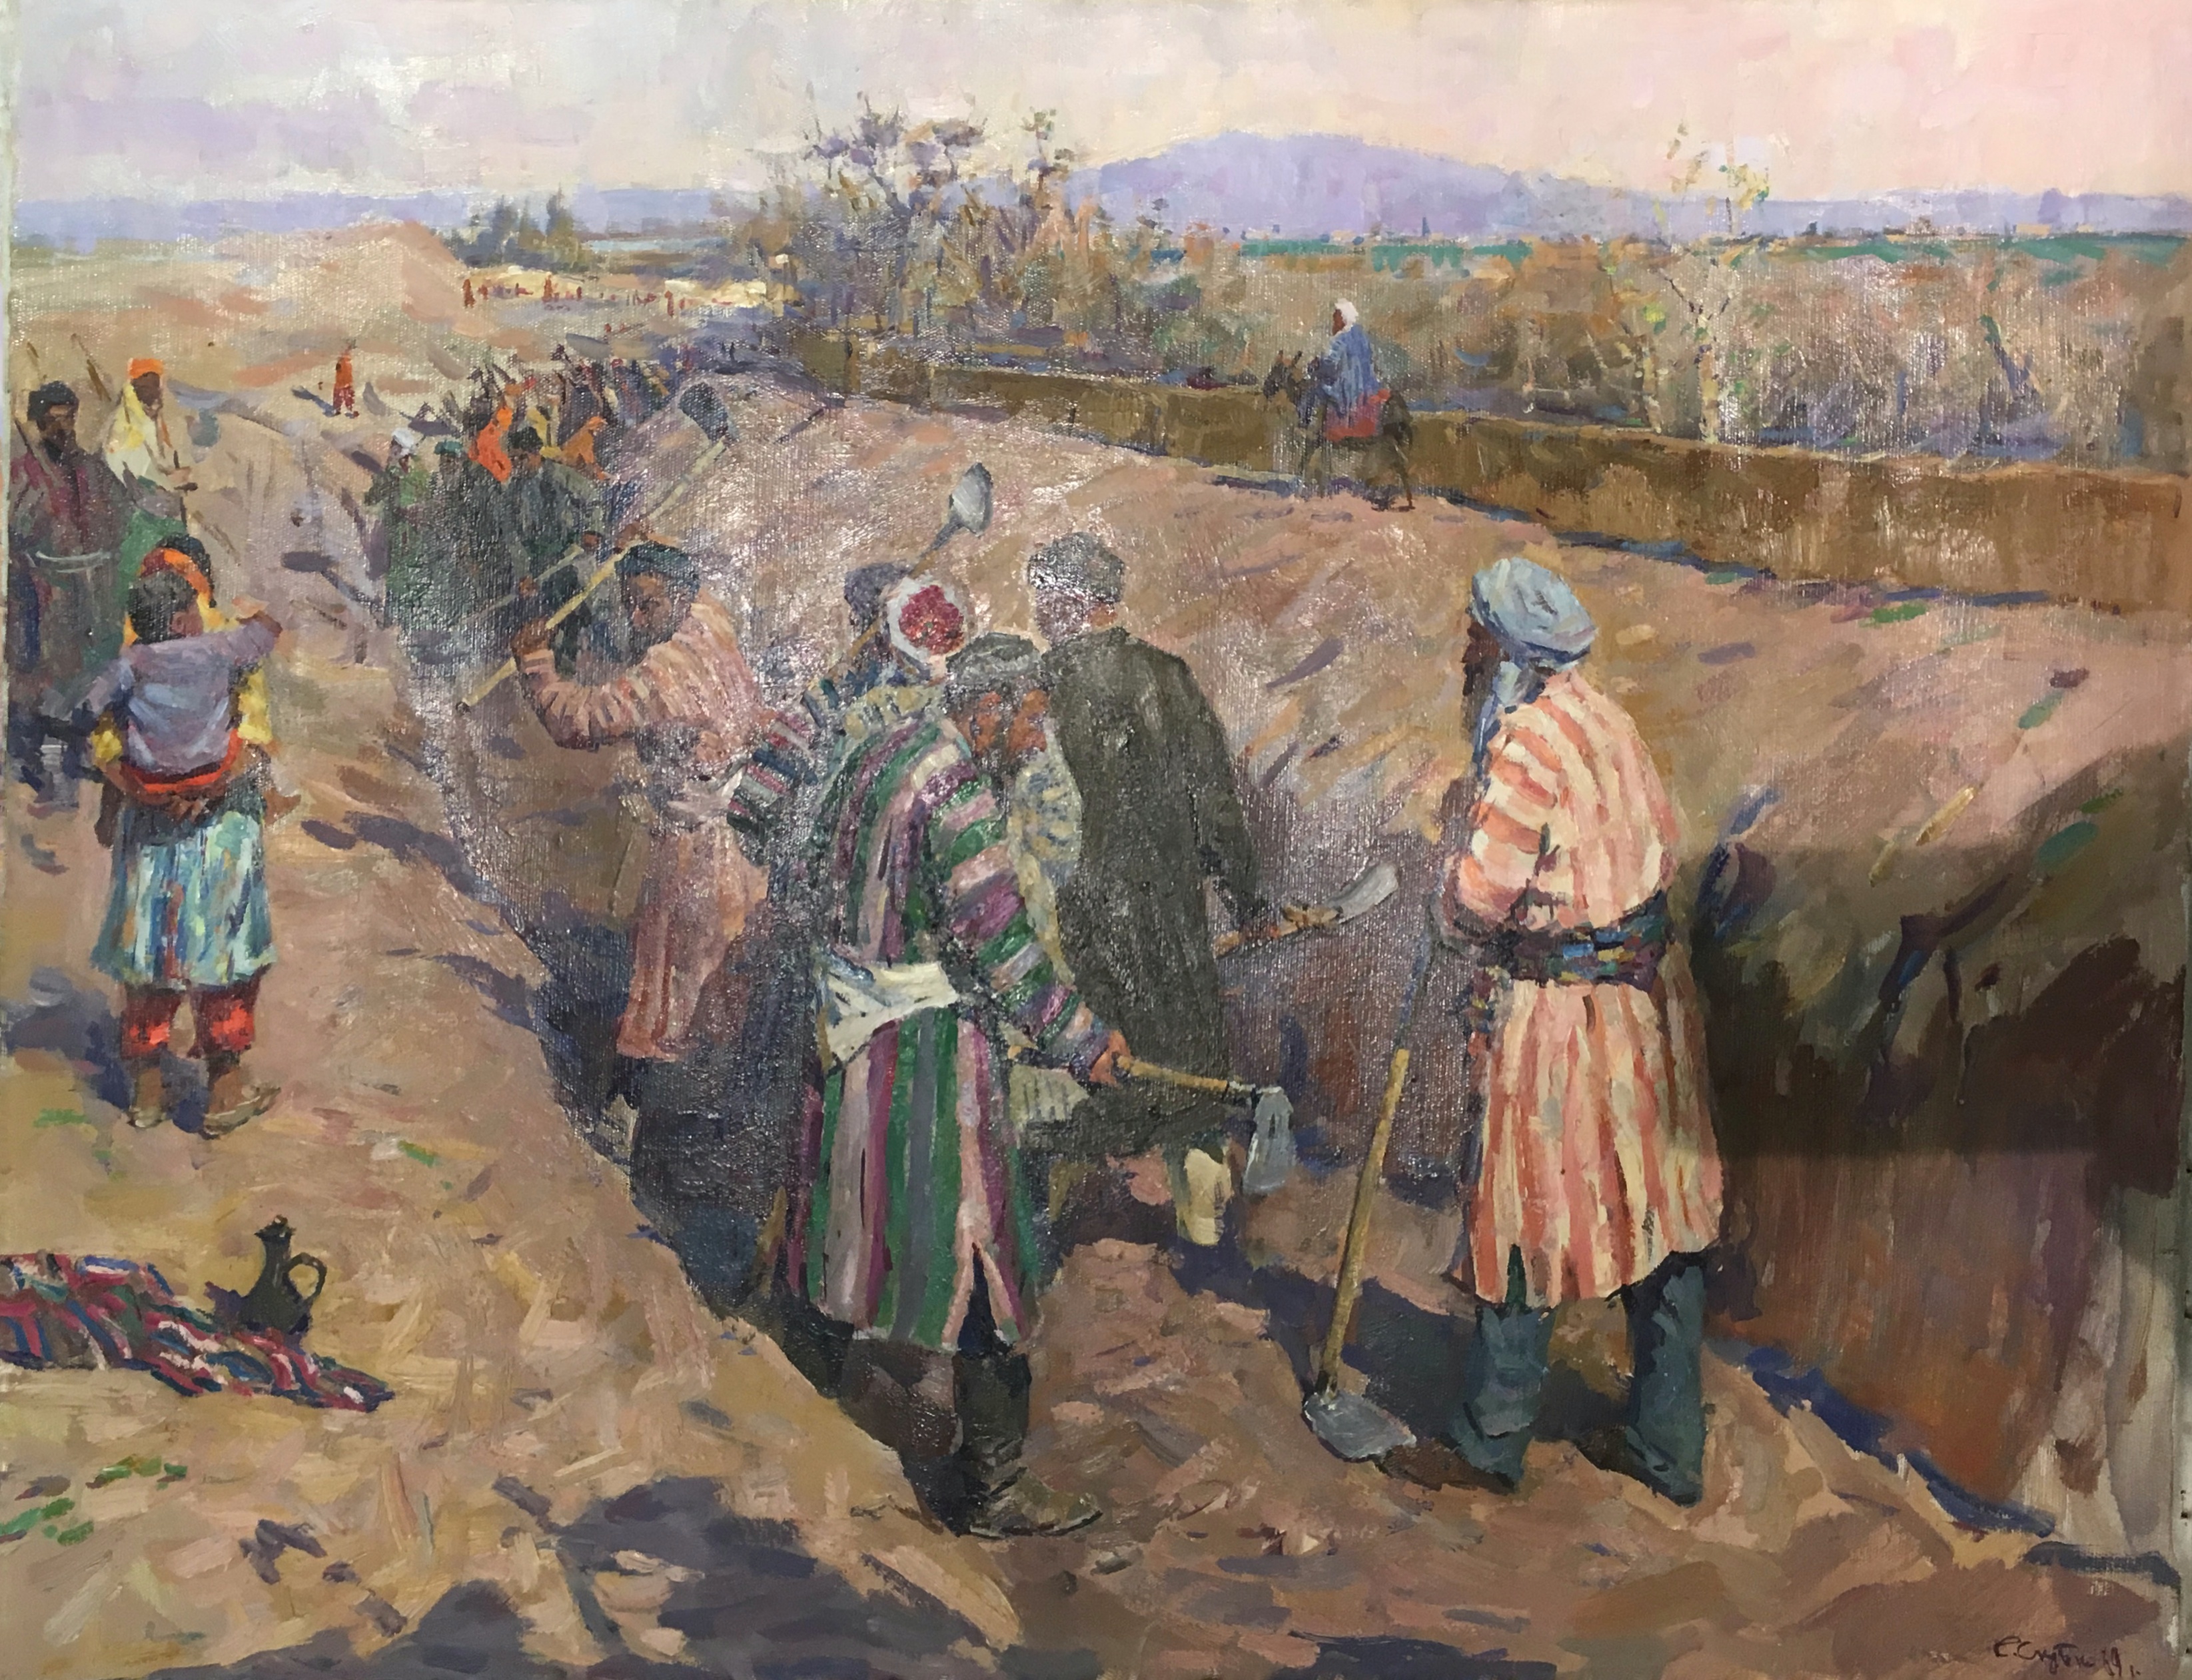 Скубко Сергей Михайлович. Борьба за воду. Строительство стыков в старом Узбекистане